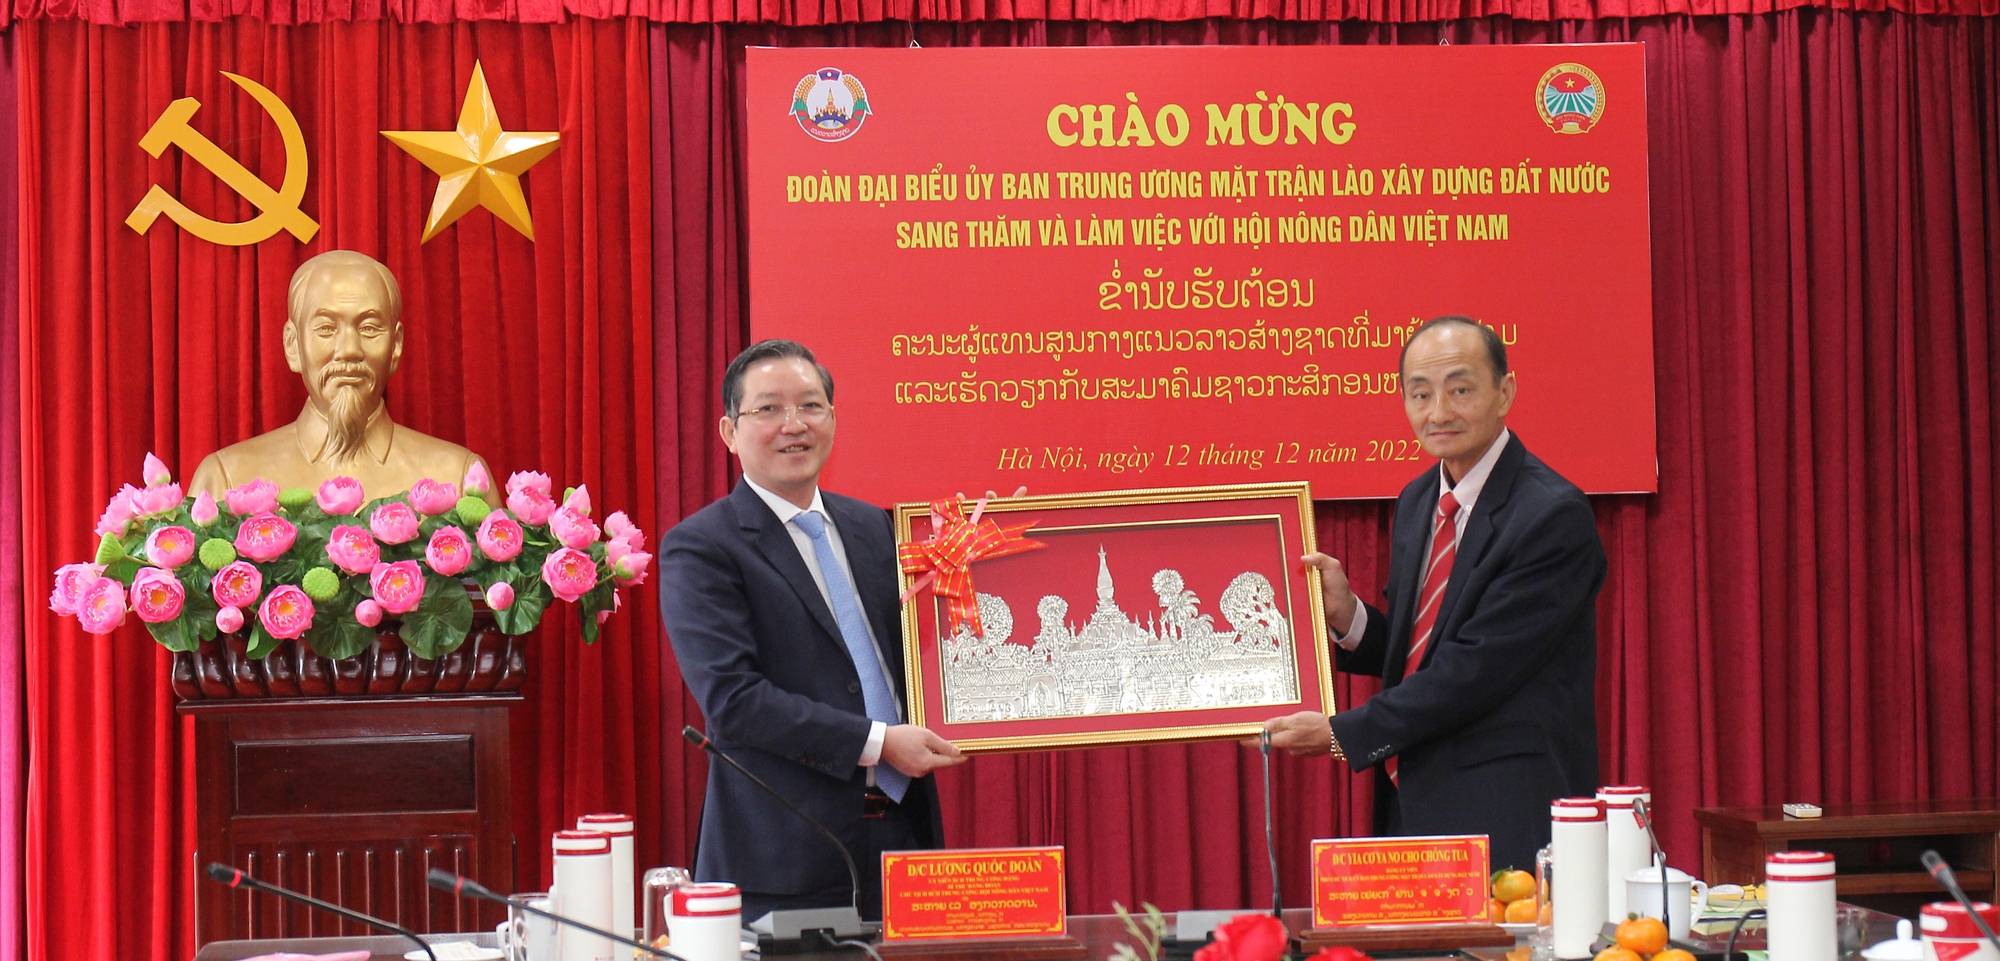 Chủ tịch Hội NDVN Lương Quốc Đoàn trao đổi kinh nghiệm công tác Hội với T.Ư Mặt trận Lào xây dựng đất nước- Ảnh 2.